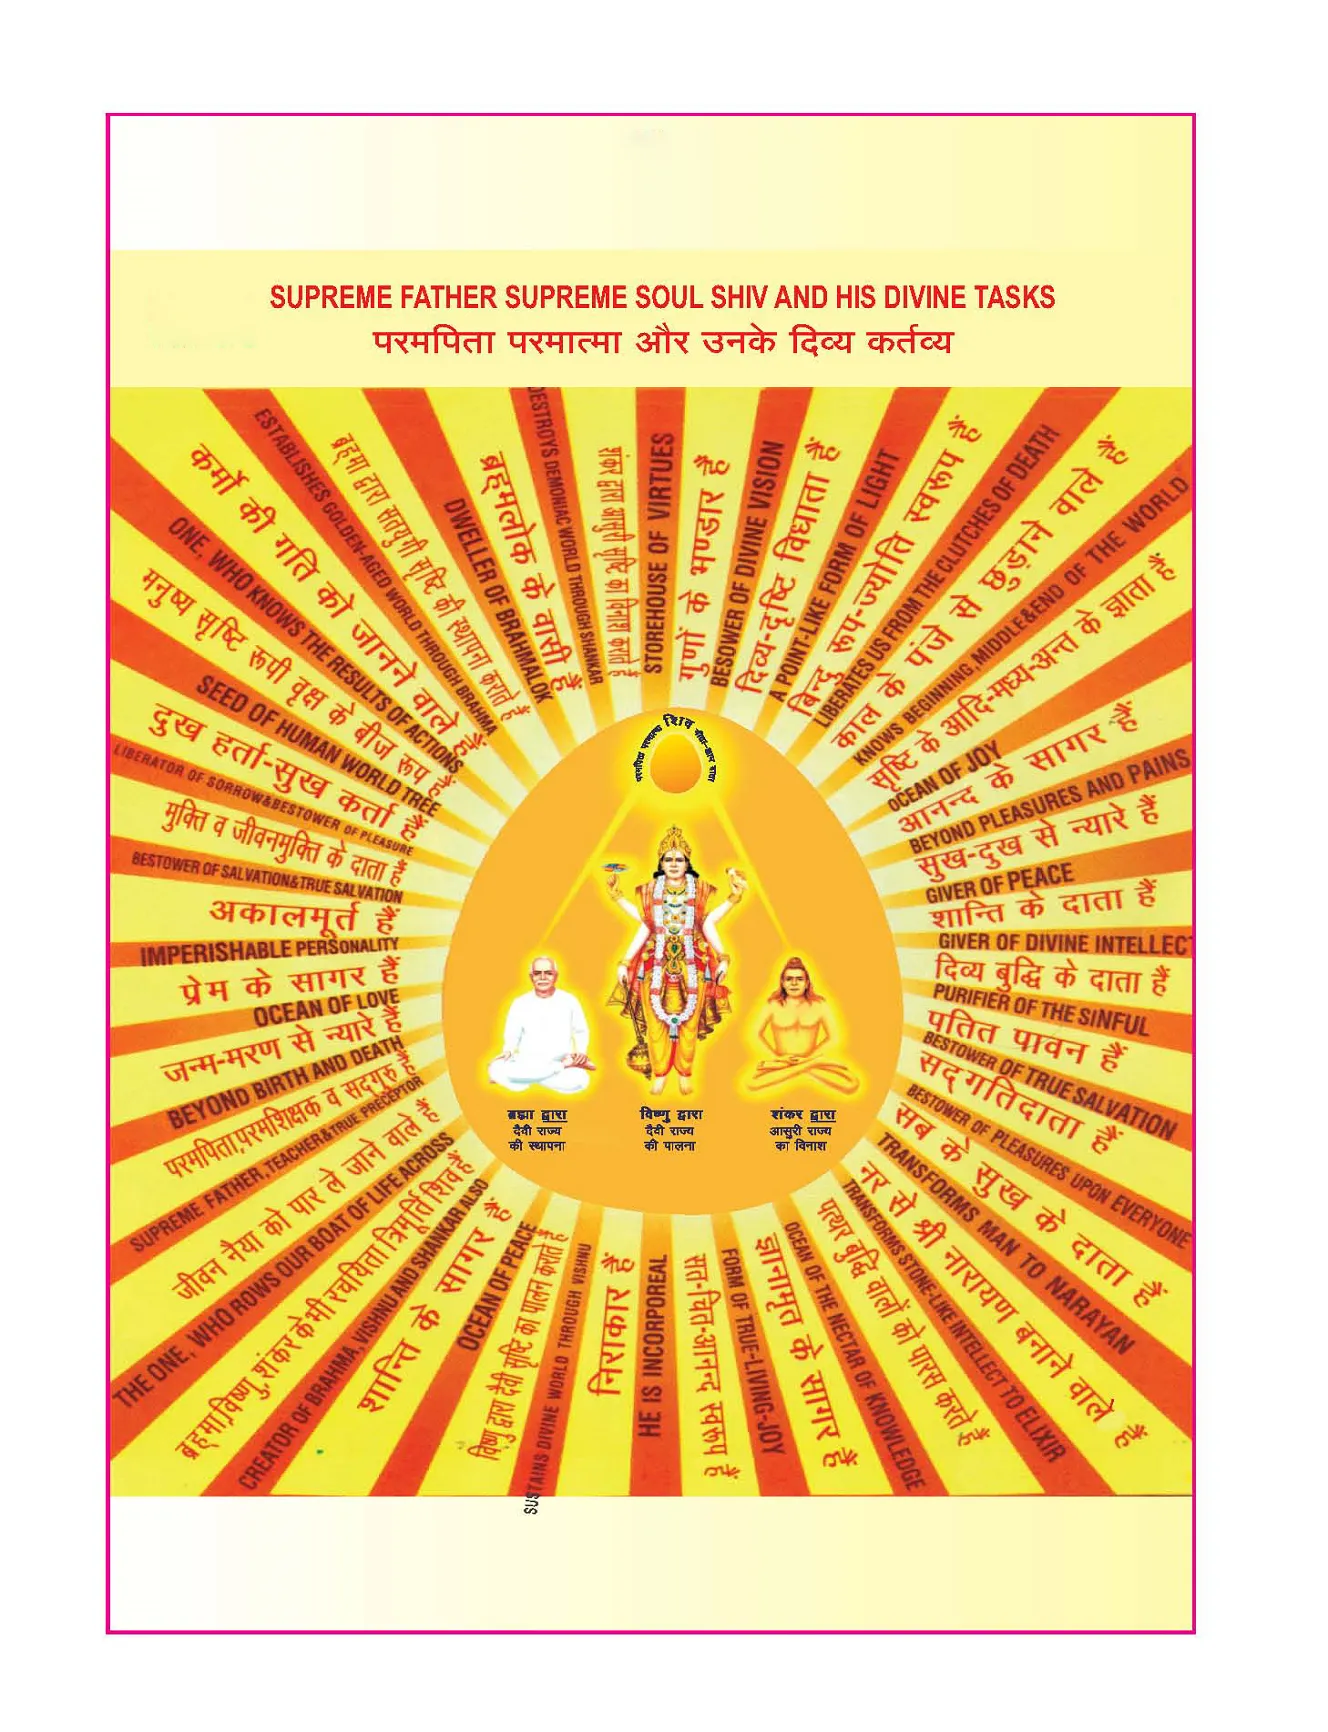 The Supreme Father + Supreme Soul Shiva and His Divine tasks